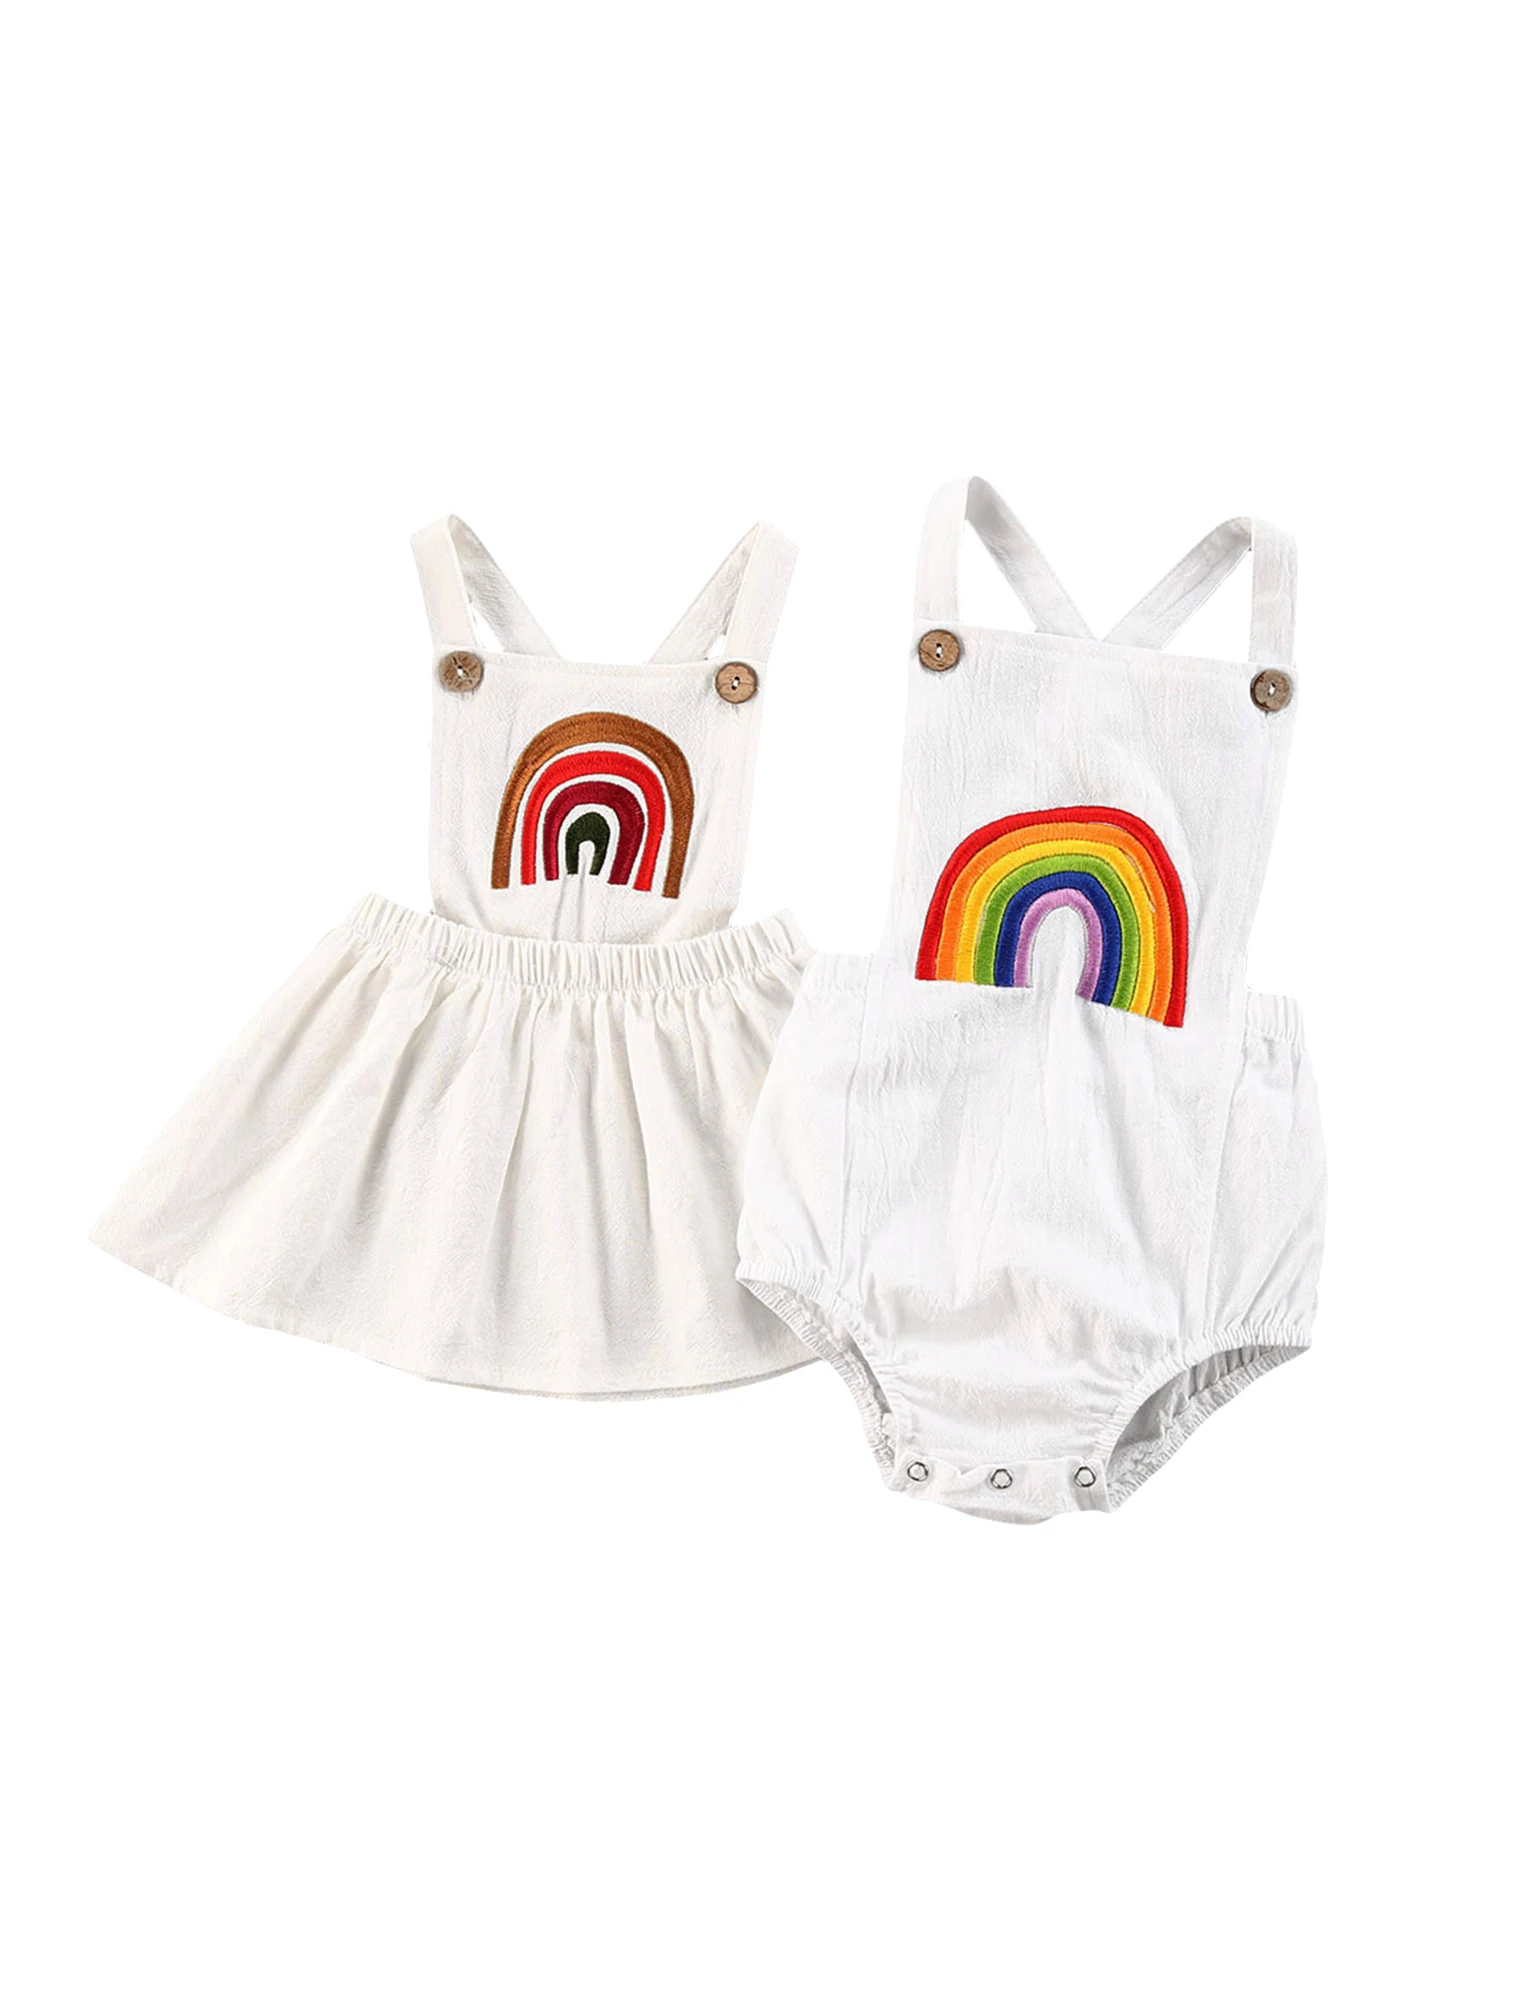 

Размер от 0 до 24 месяцев, Одежда для новорожденных без рукавов в разноцветную полоску Песочник Комбинезон хлопковый летняя одежда